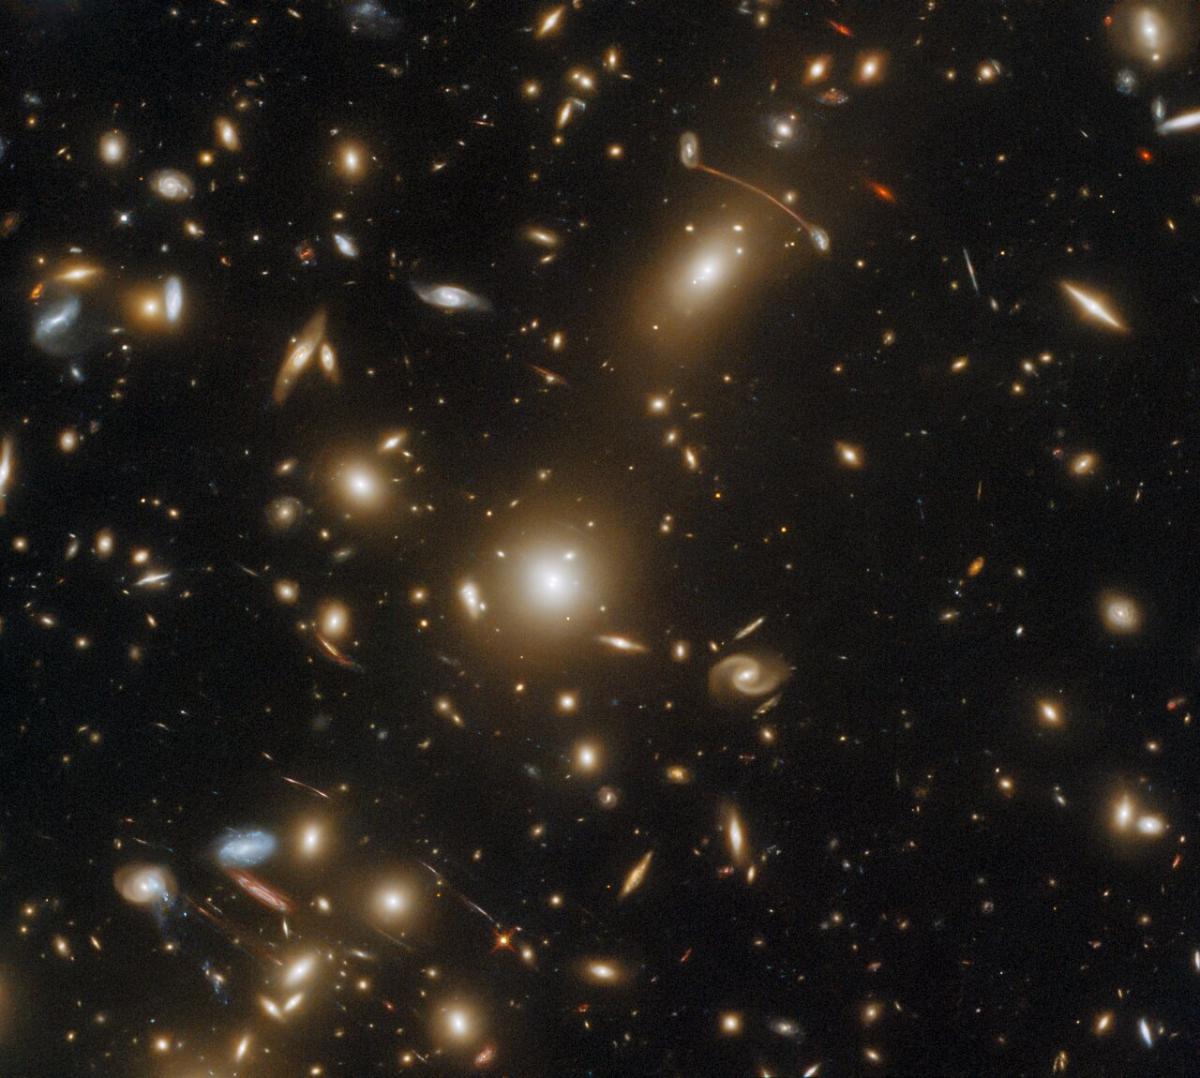 Масивне скупчення галактик Abell 1351 знаходиться в сузір’ї Великої Ведмедиці / фото ESA / Hubble & NASA, H. Ebeling